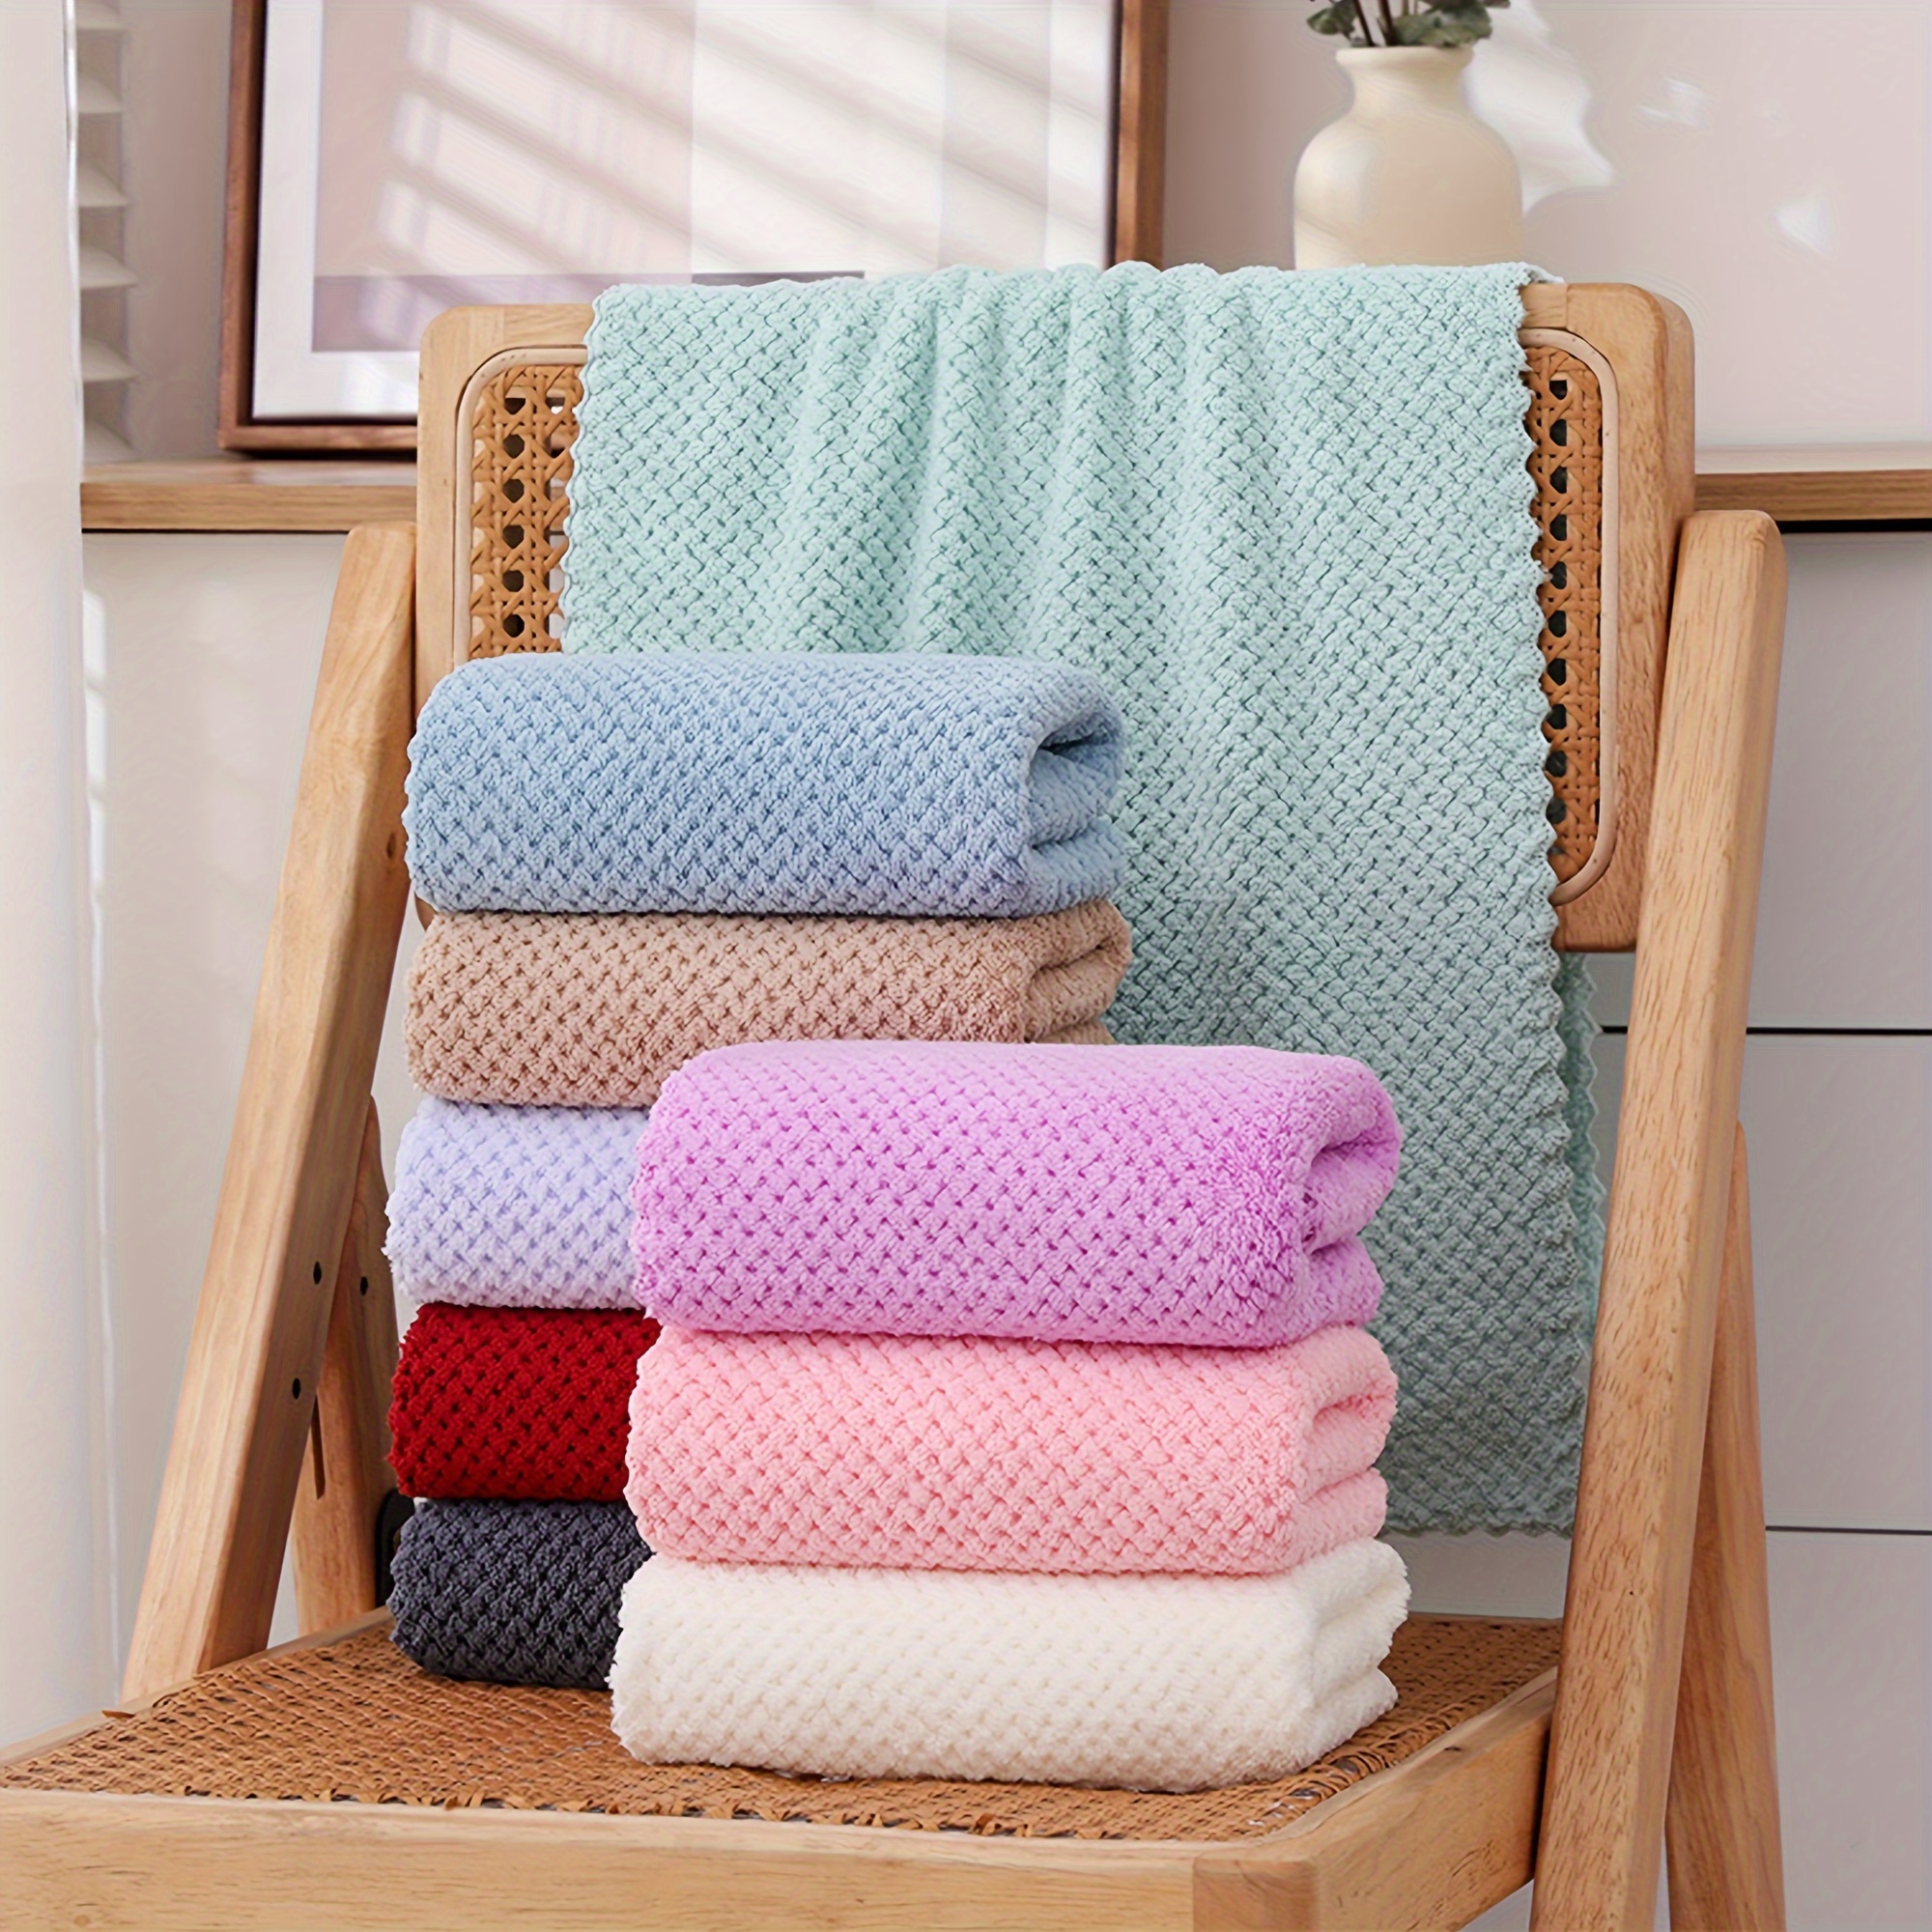 8pcs Coral Velvet Bath Towel Set Including 2 Oversized Bath Towels, 2  Regular Towels And 4 Hand Towels; Fine, Soft And Absorbent Bathroom Towel  Set